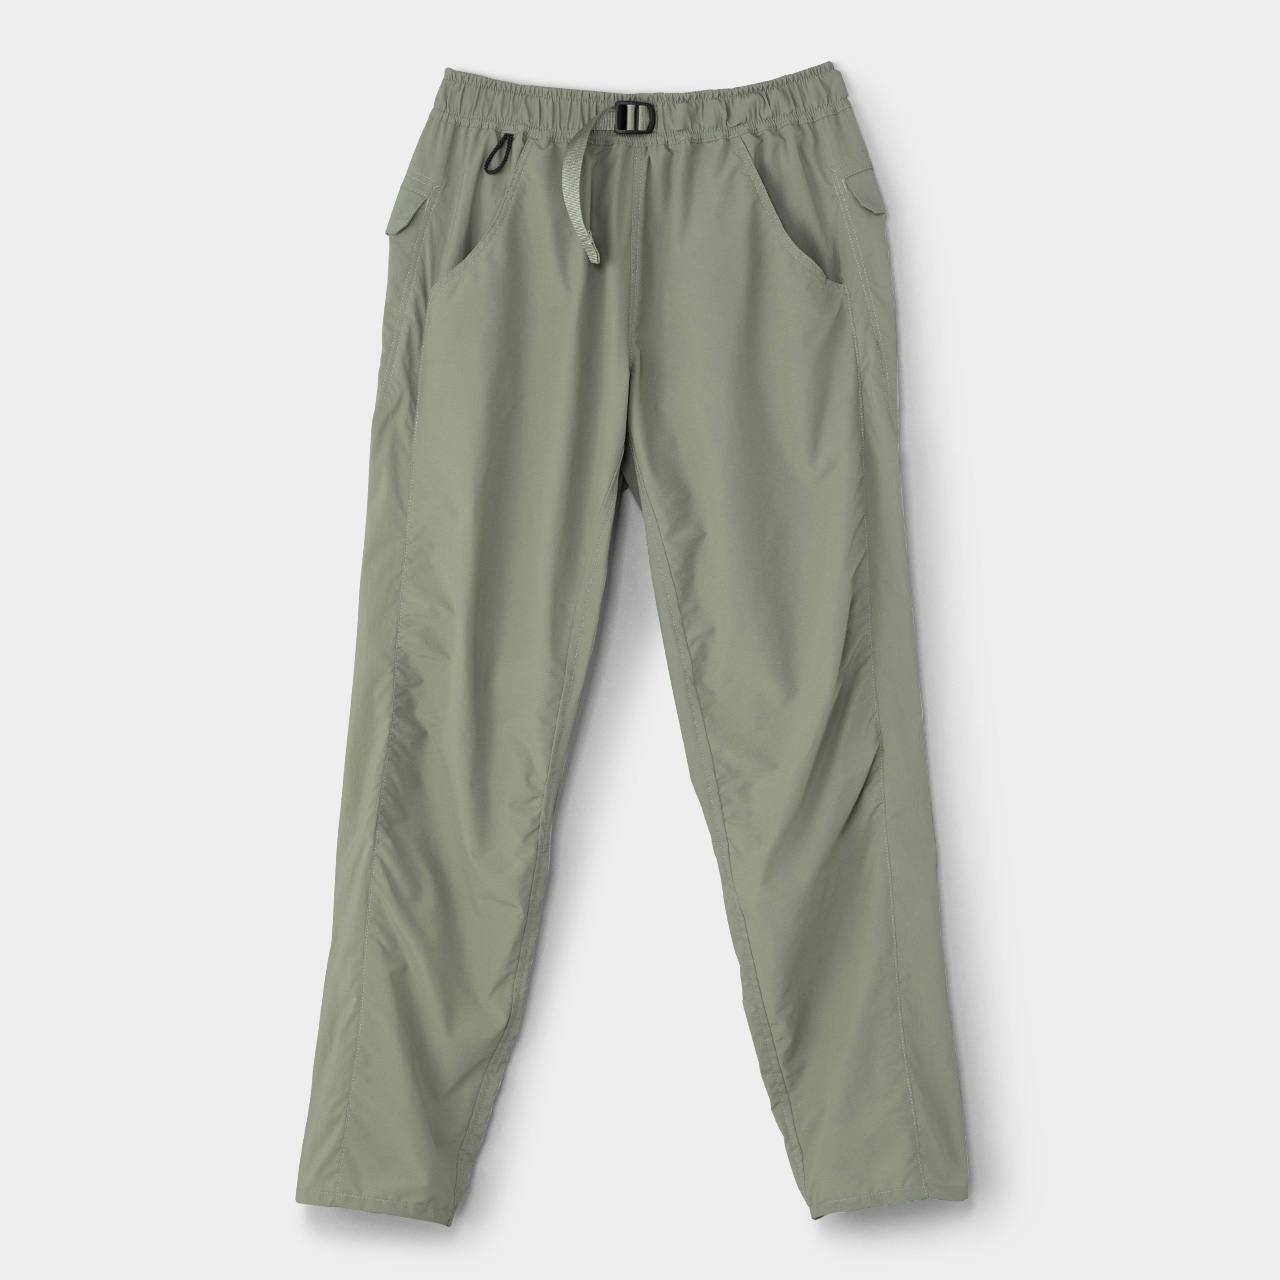 DW 5-Pocket Pants -Men<br>For Sale Apr 24, 18:00 JST<br>Restocked on Online Shop<br>Well-Balanced Long Pants